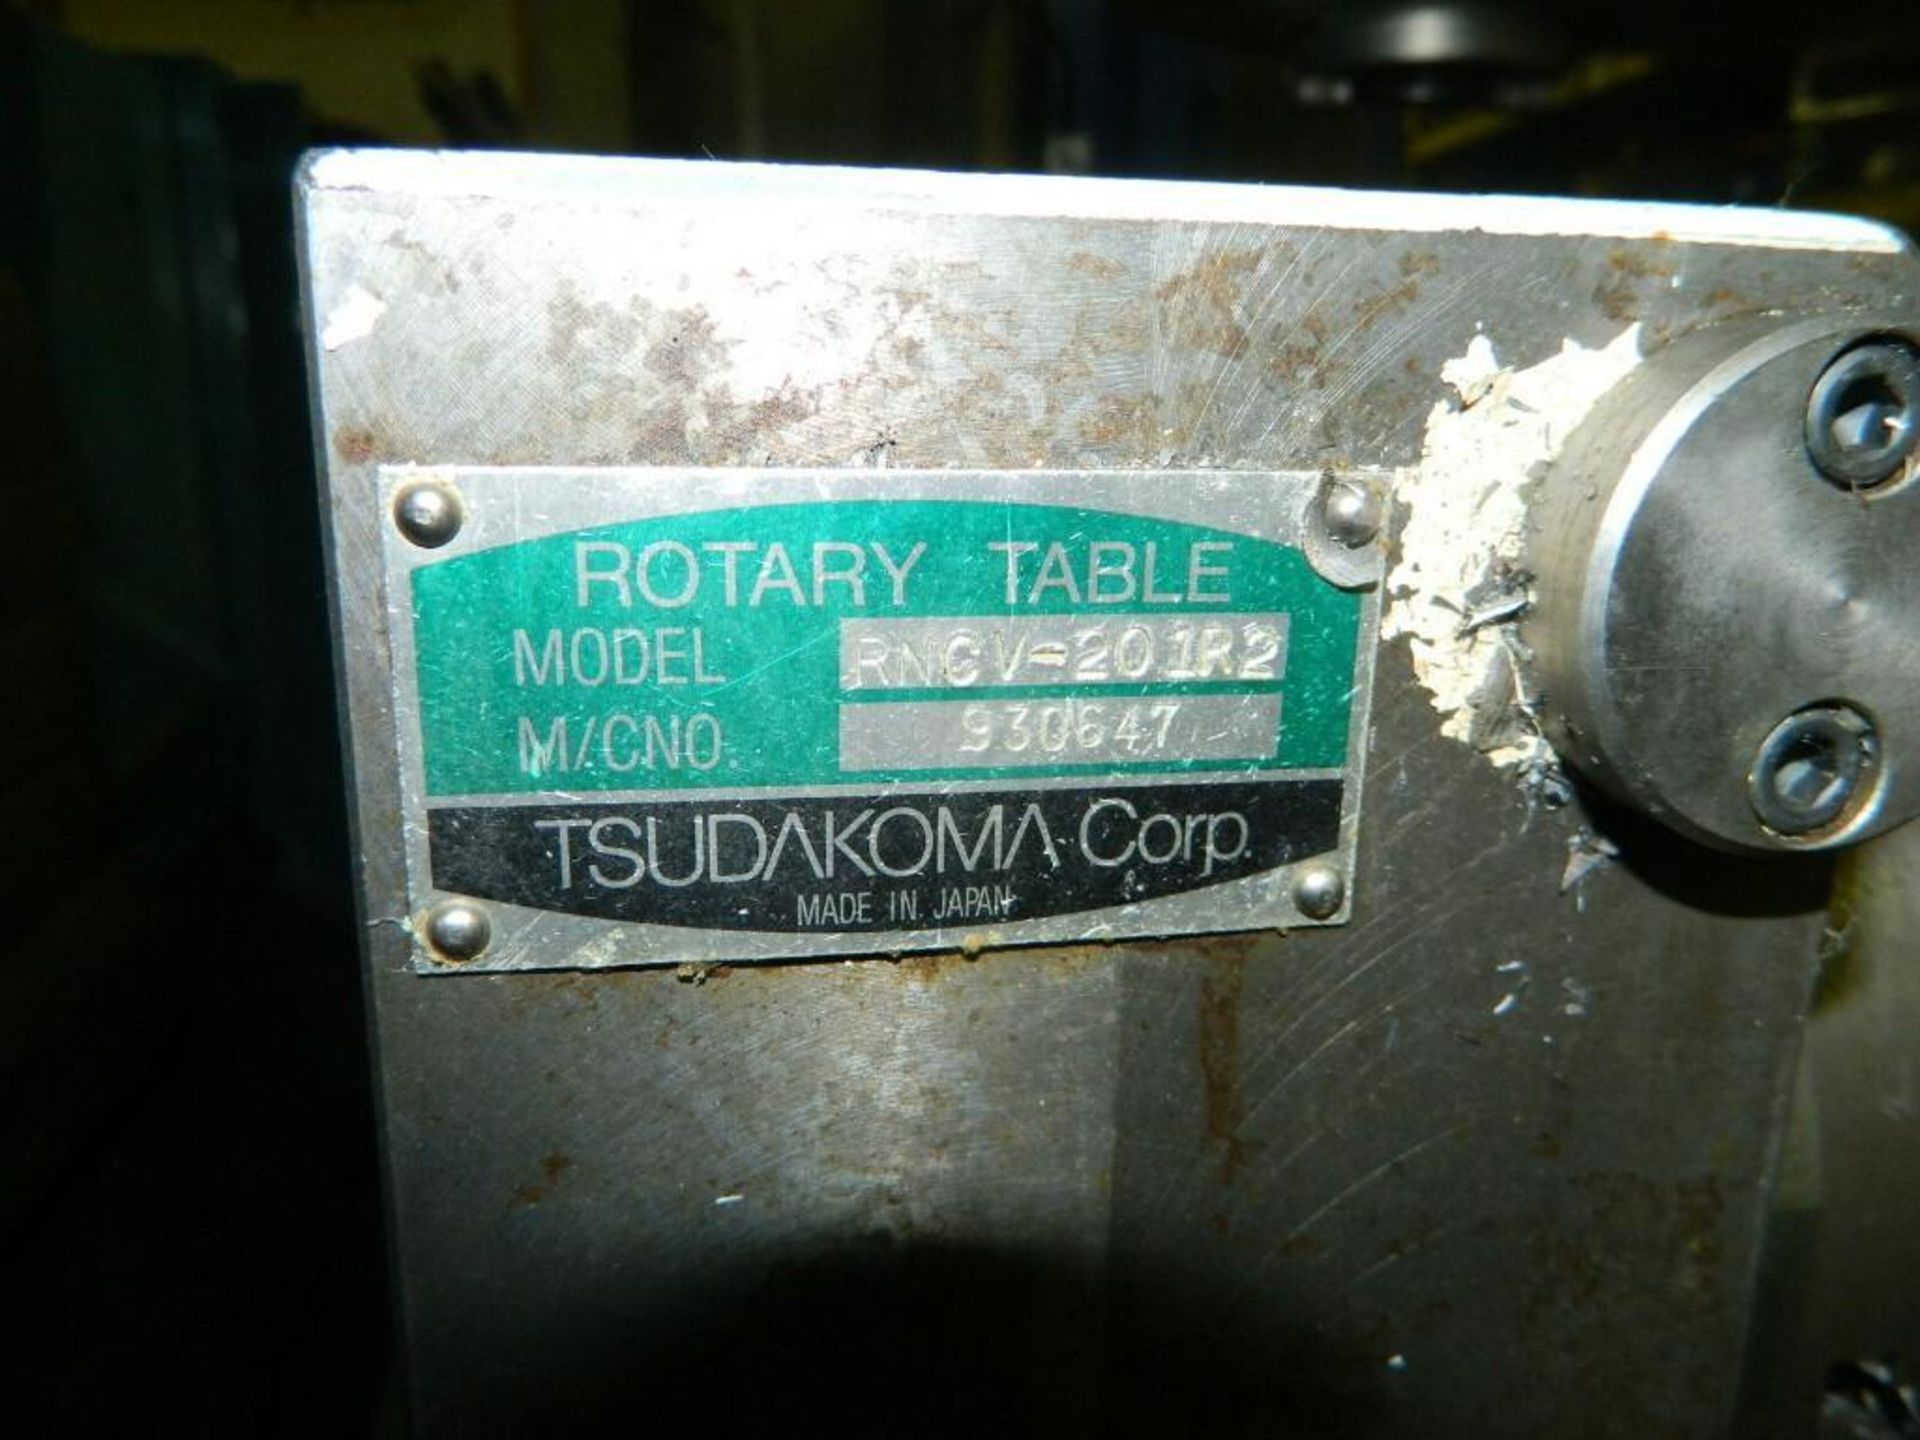 Tsudakoma #RNCV-201R2 Twin Rotary Table Unit - Image 4 of 4